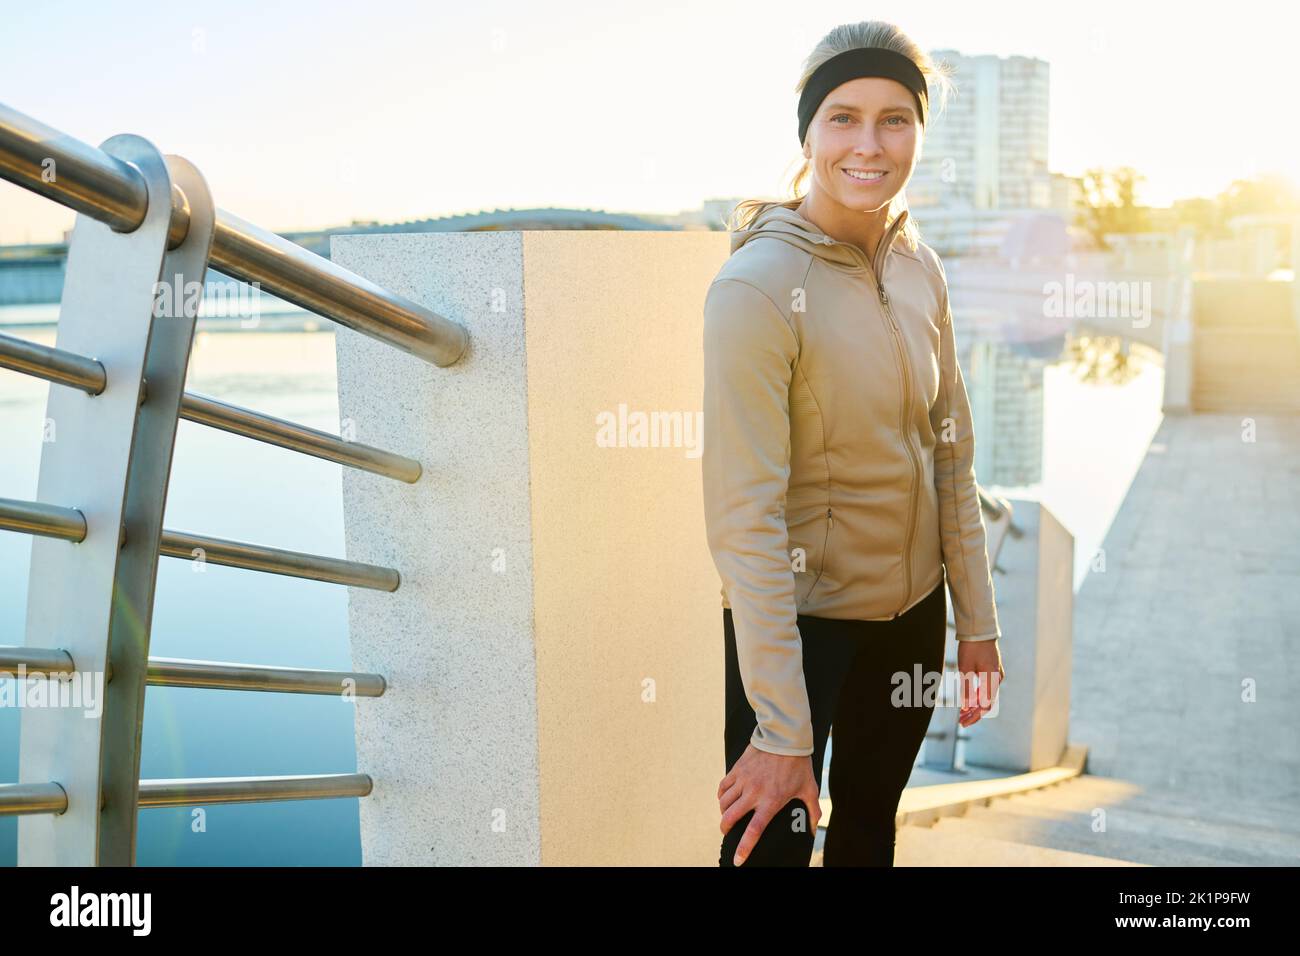 Junge, lächelnde Sportlerin im aktiven Ohr, die auf der Brücke am Flussufer steht und die Kamera anschaut, während sie sich nach dem Training ausruhte Stockfoto